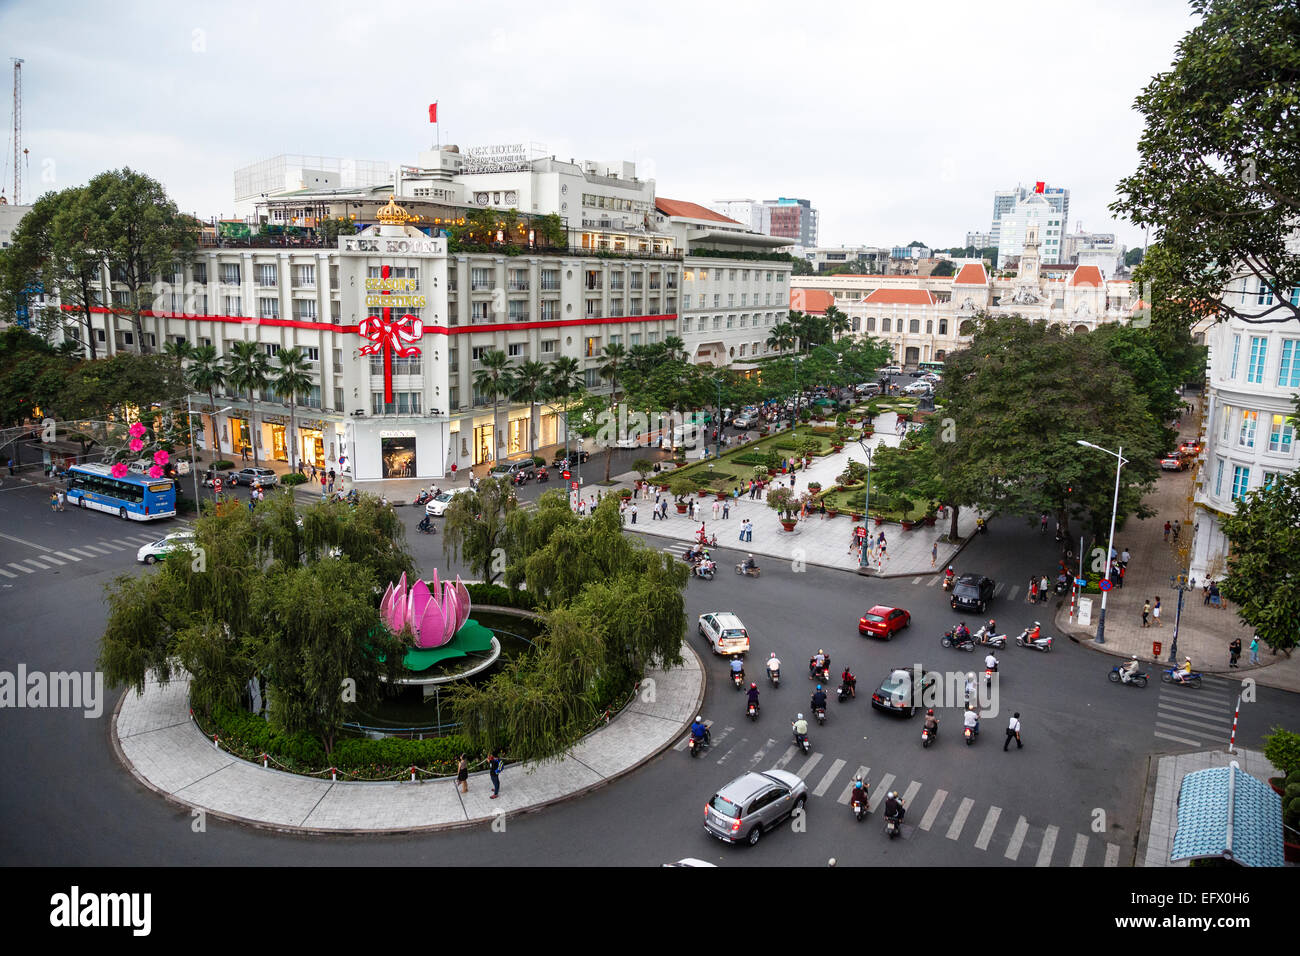 Intersezione di traffico Nguyen Hue Boulevard e Le Loi boulevard, la città di Ho Chi Minh (Saigon), Vietnam. Foto Stock